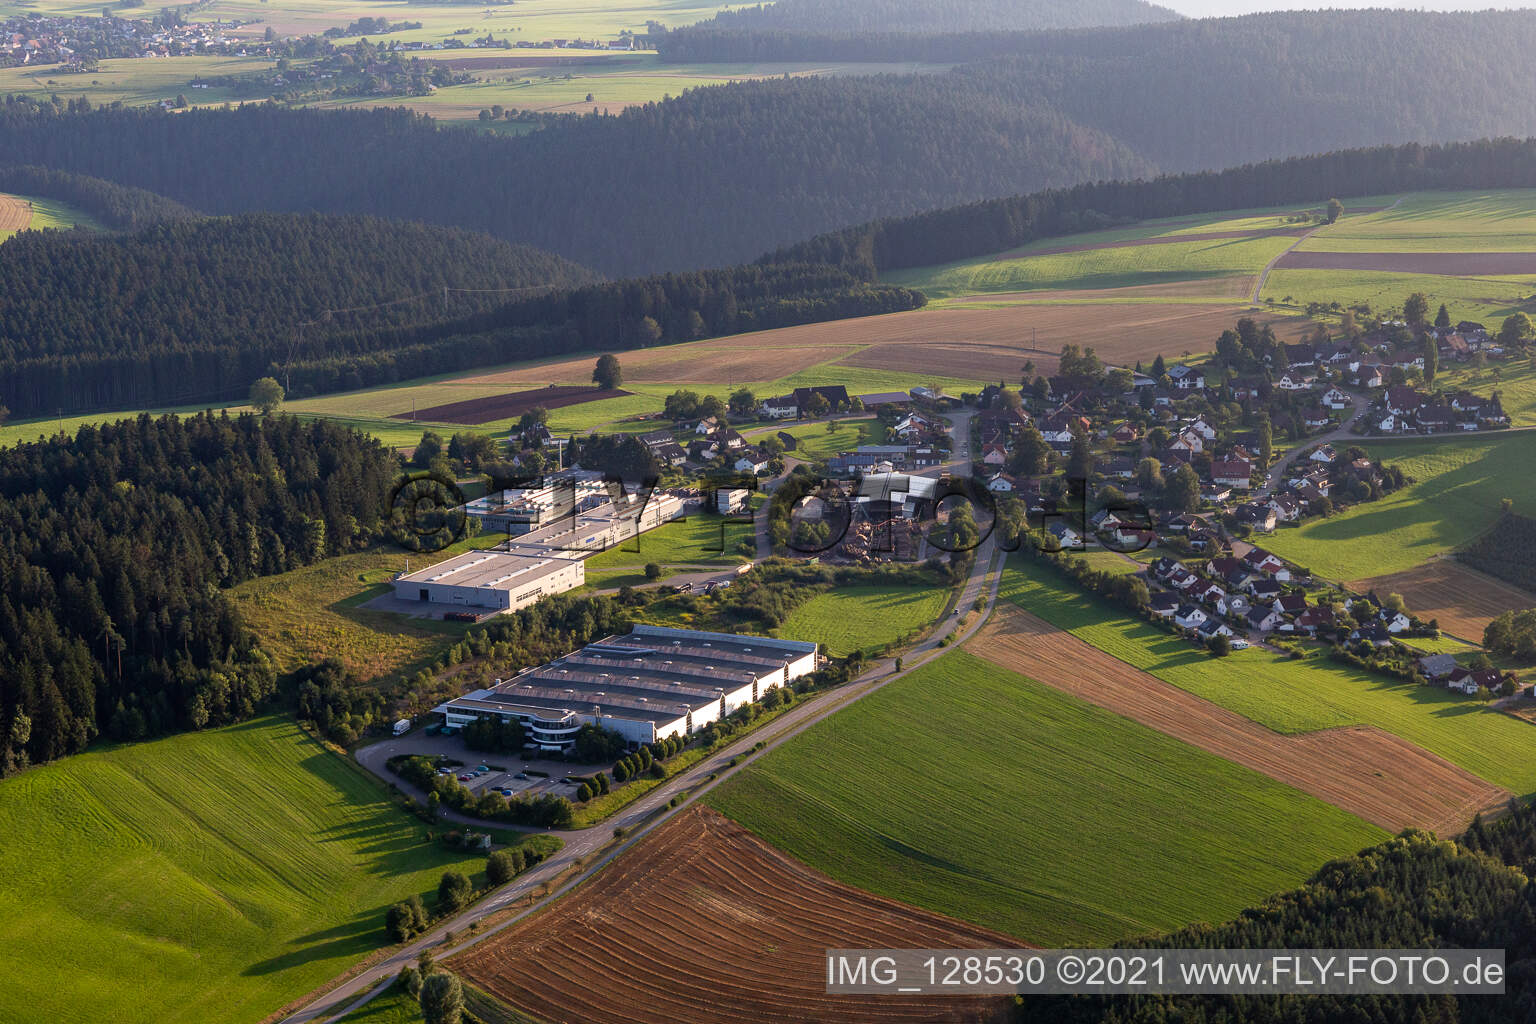 Vue aérienne de Locaux de la société AIT Metall Processing GmbH & Co. KG avec halls, bâtiments d'entreprise et installations de production à Alpirsbach dans le département Bade-Wurtemberg, Allemagne